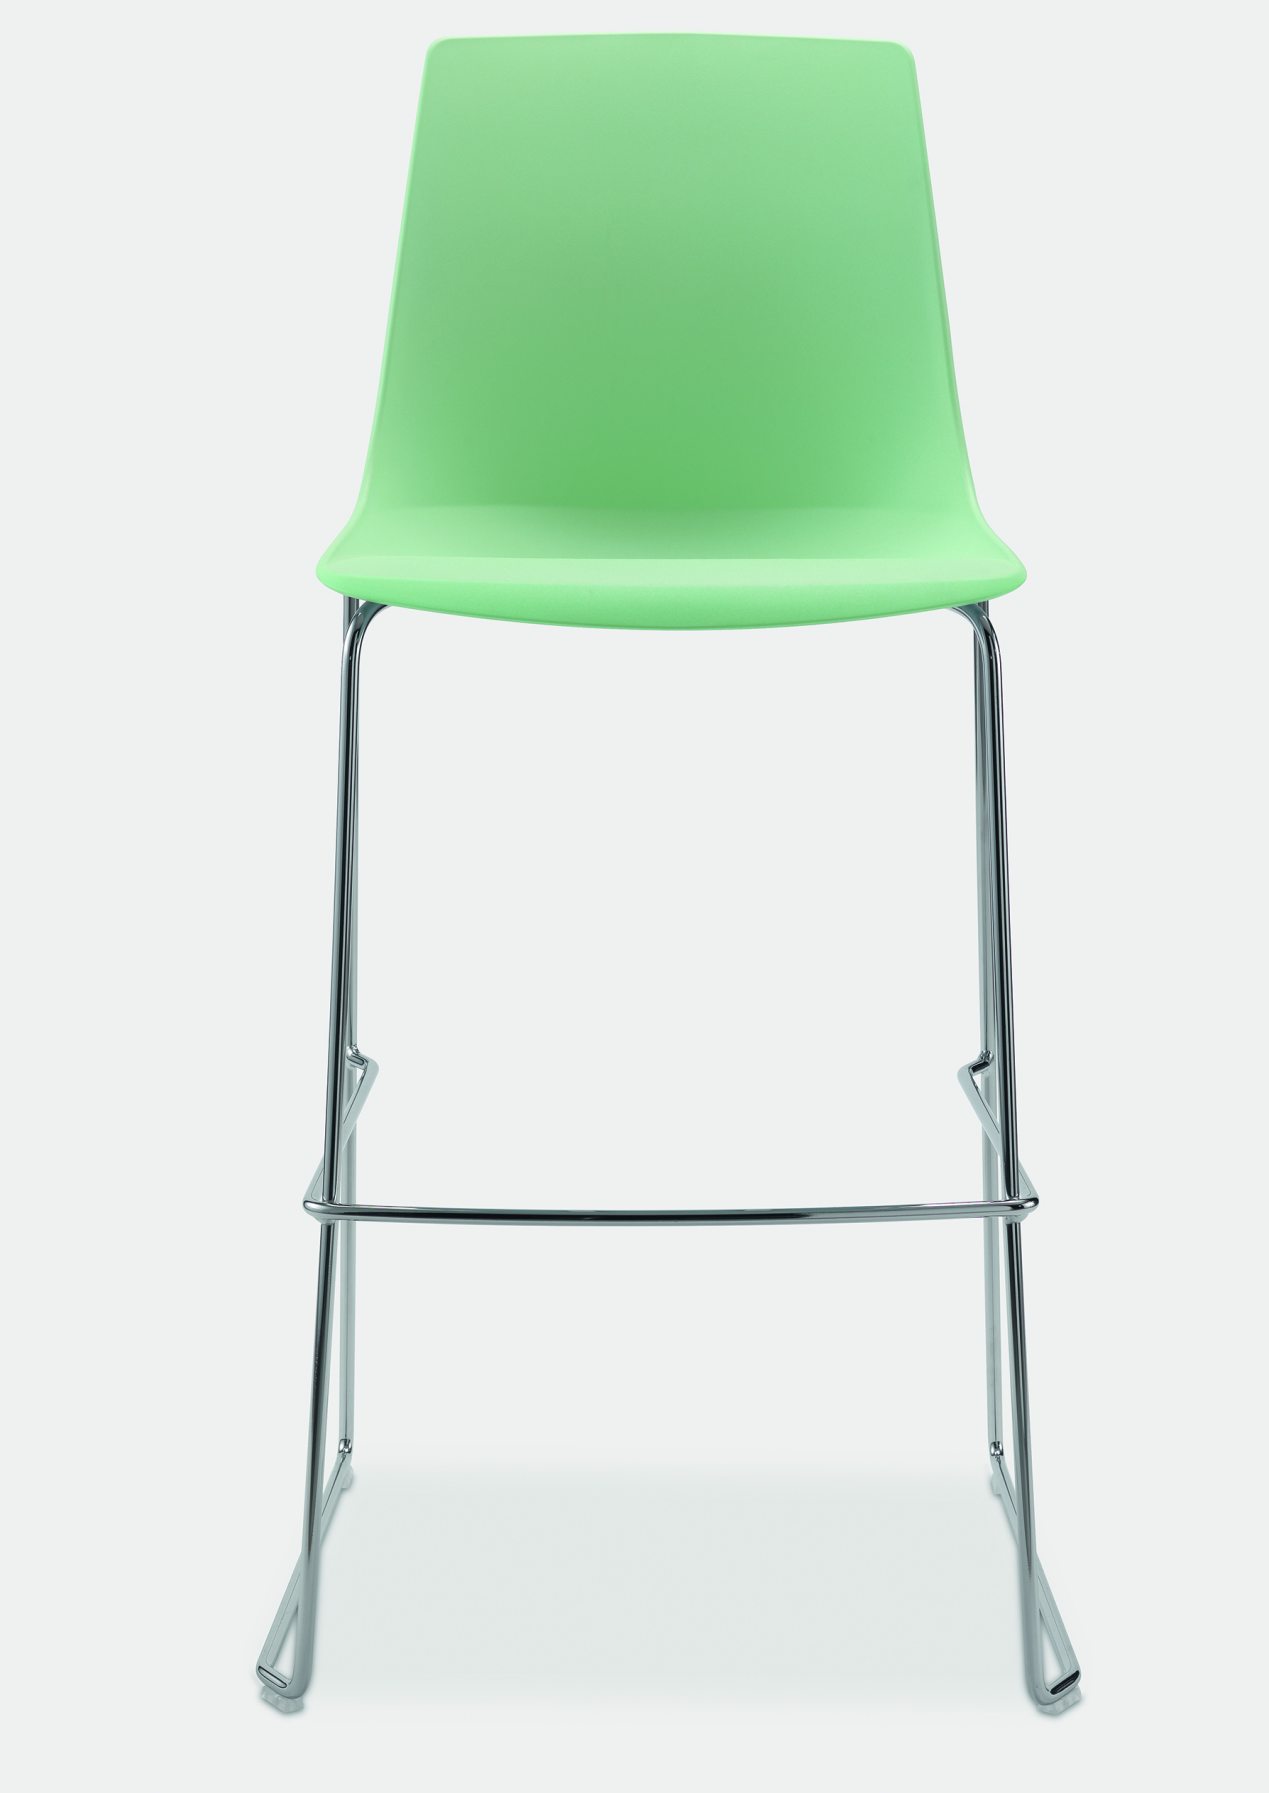 bequemer Schalensitz-Barhocker mit grüner Kunststoff-Sitzschale auf stapelbaren Kufengestell